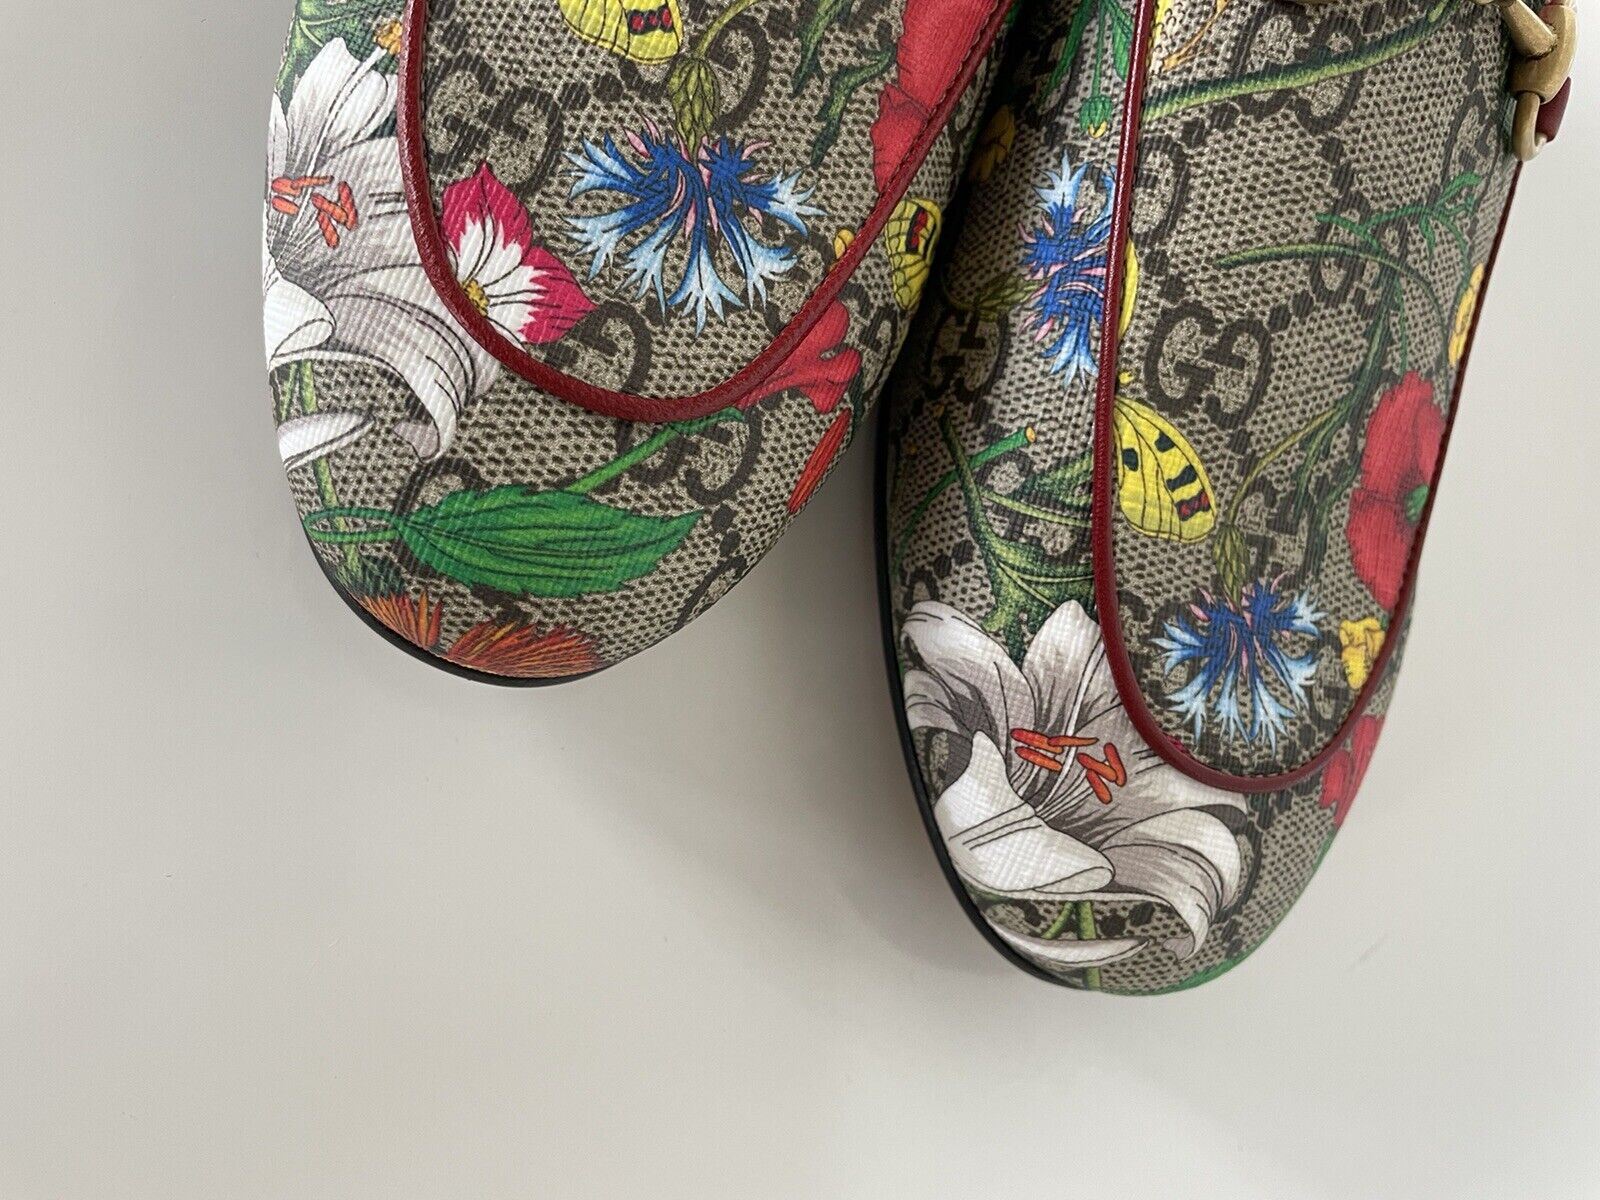 Женские сандалии без шнуровки GG Supreme с цветочным принтом Gucci Gucci Horsebit, 6 США (36 ЕС) 432772 